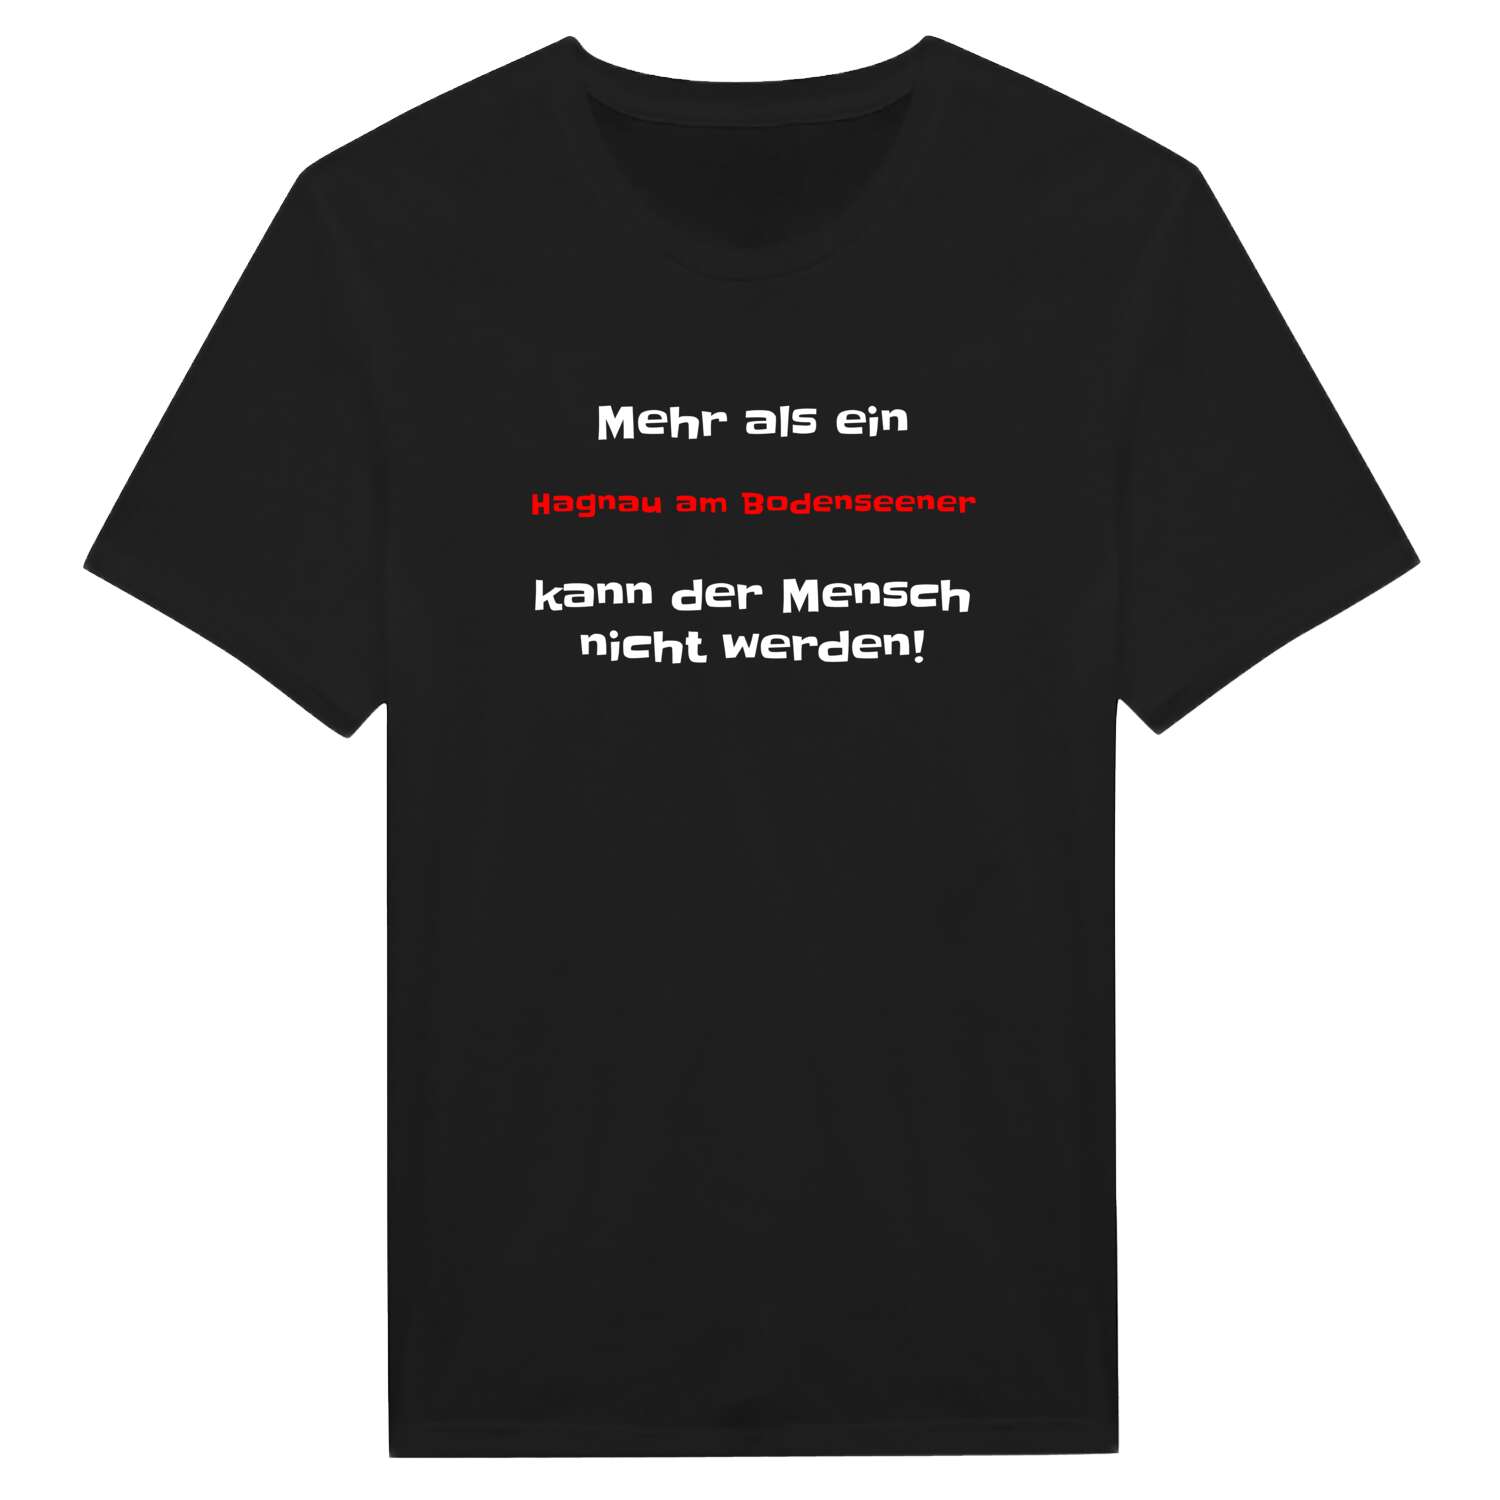 Hagnau am Bodensee T-Shirt »Mehr als ein«